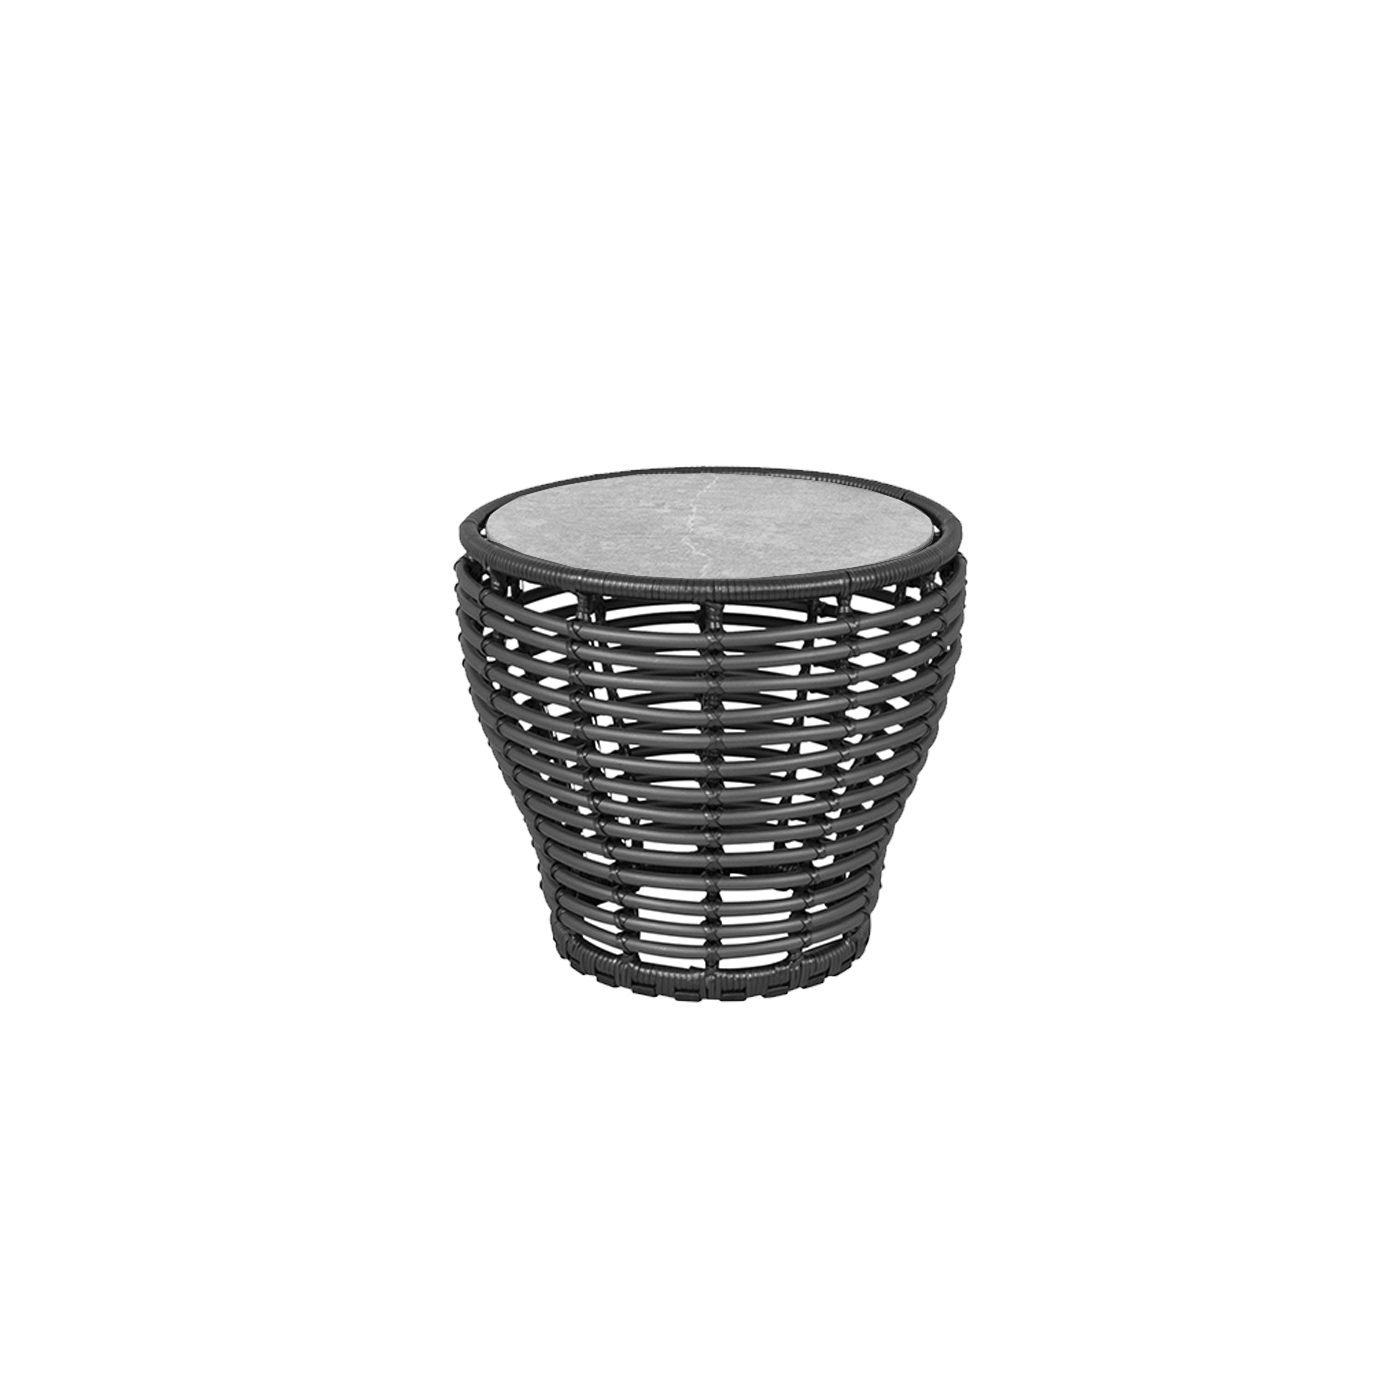 Cane-line "Basket" Loungetisch klein, Geflecht graphit, Tischplatte Keramik grau, Ø 50 cm